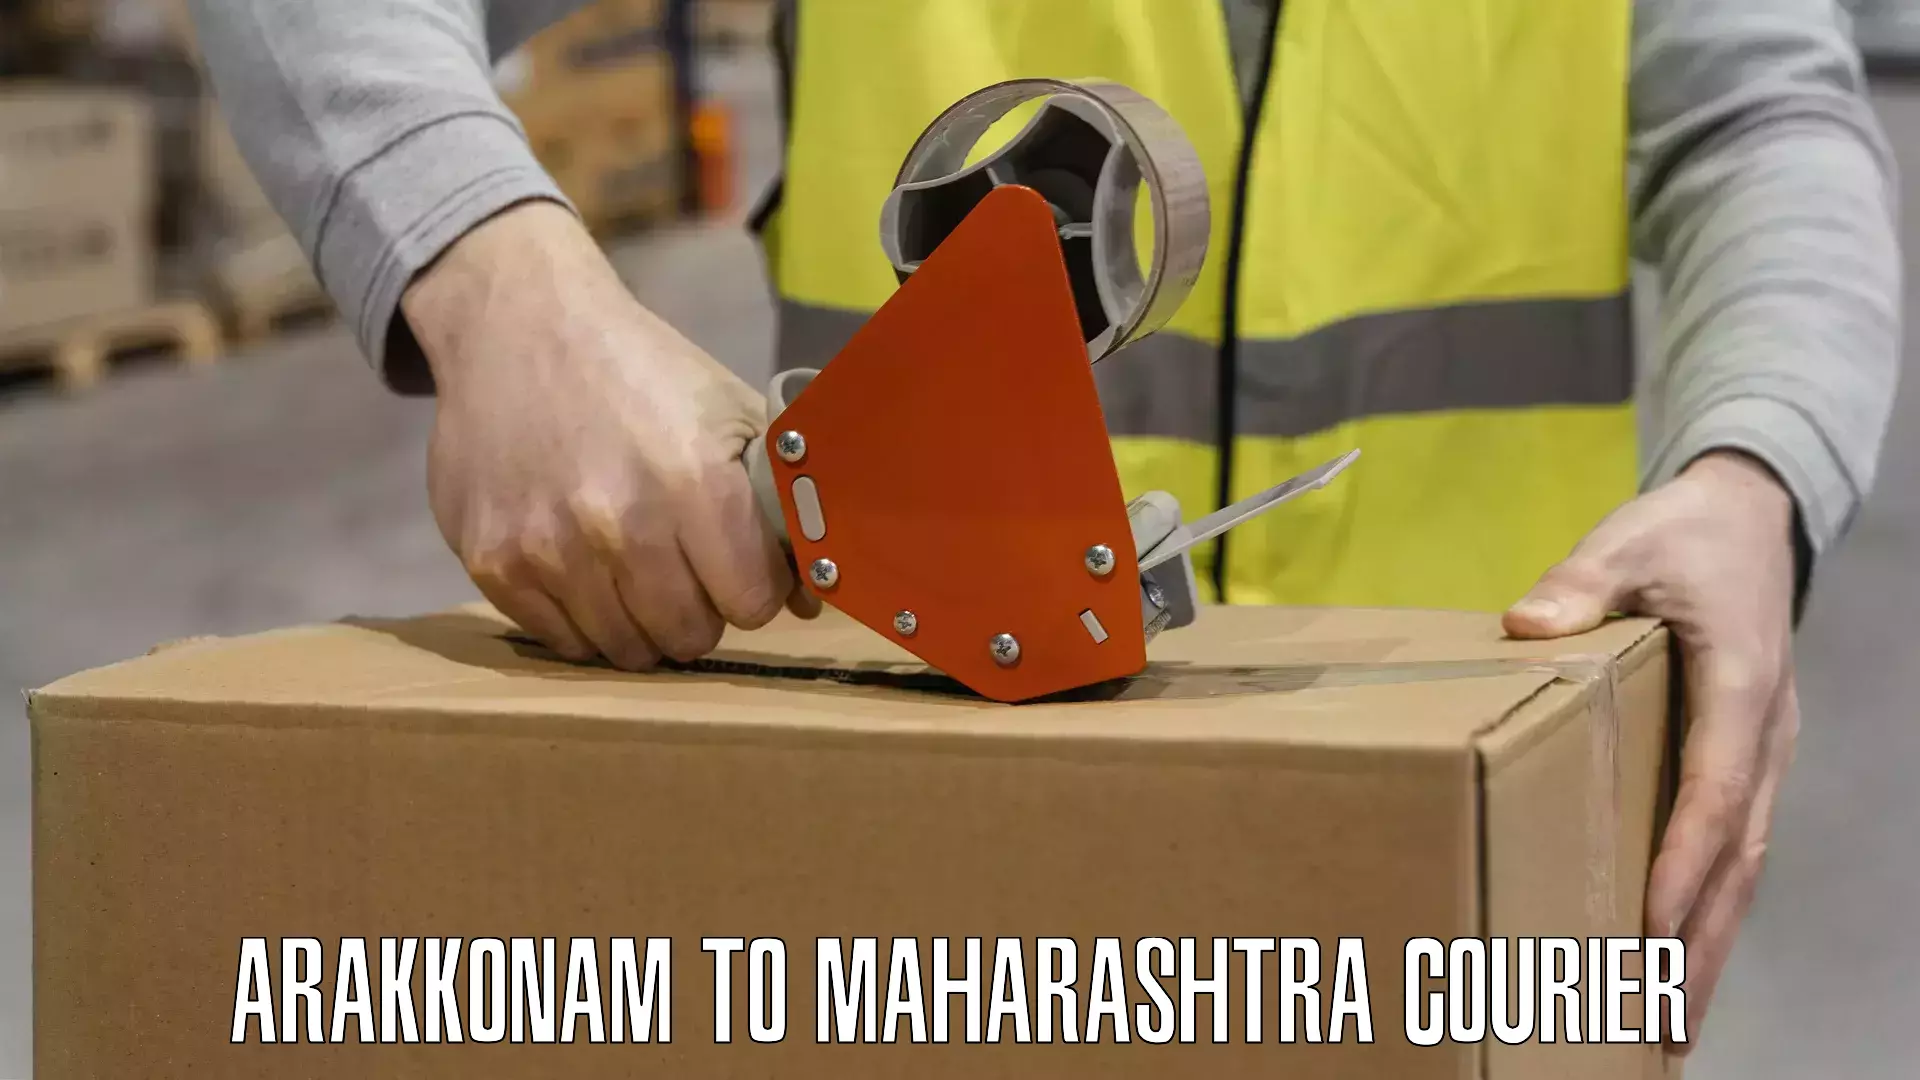 Express delivery capabilities in Arakkonam to Maharashtra